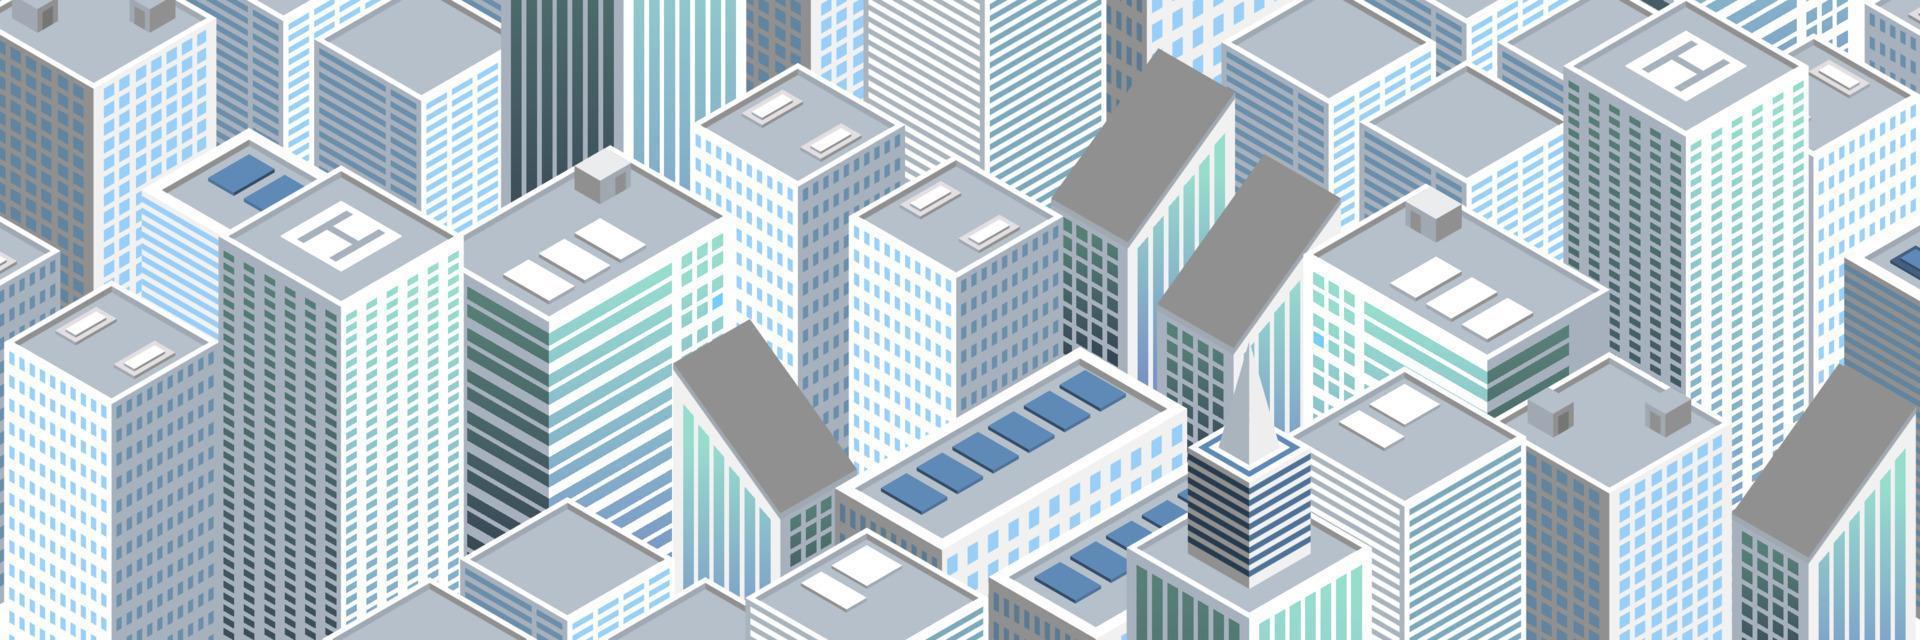 isometrische futuristische Stadtvektorillustration. isometrische städtische megalopolis draufsicht auf die stadt und architektur 3d elemente verschiedene gebäude vektor